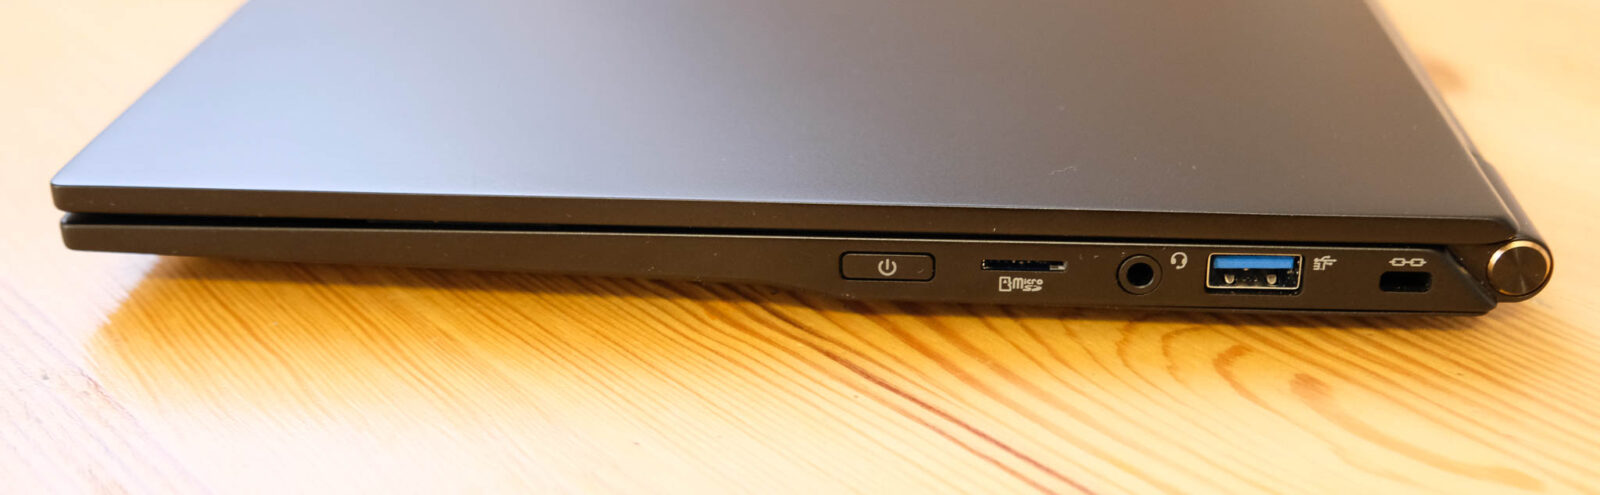 Hiro B140 laptop biznesowy z Intel i5-1135G7 dual channel recenzja test cyberbay (9)